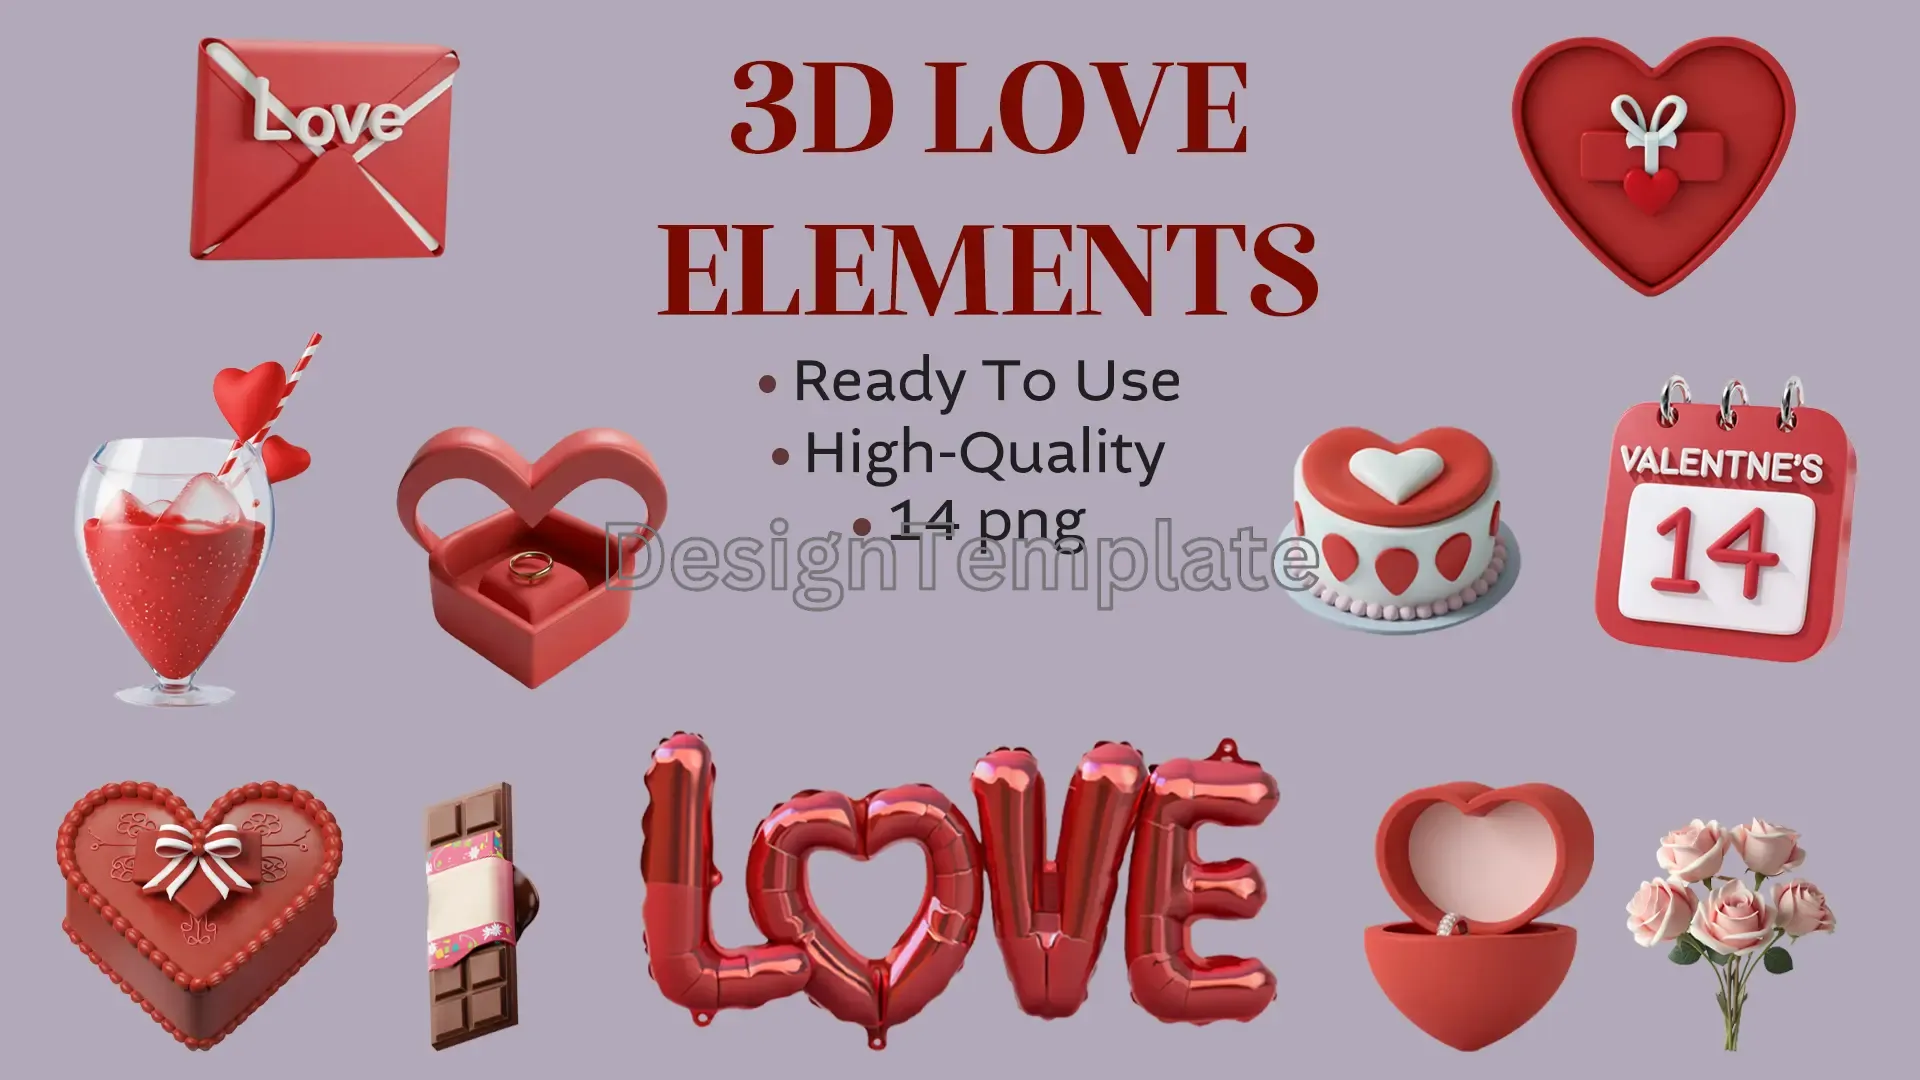 Dreamy Love Theme 3D Design Elements Pack